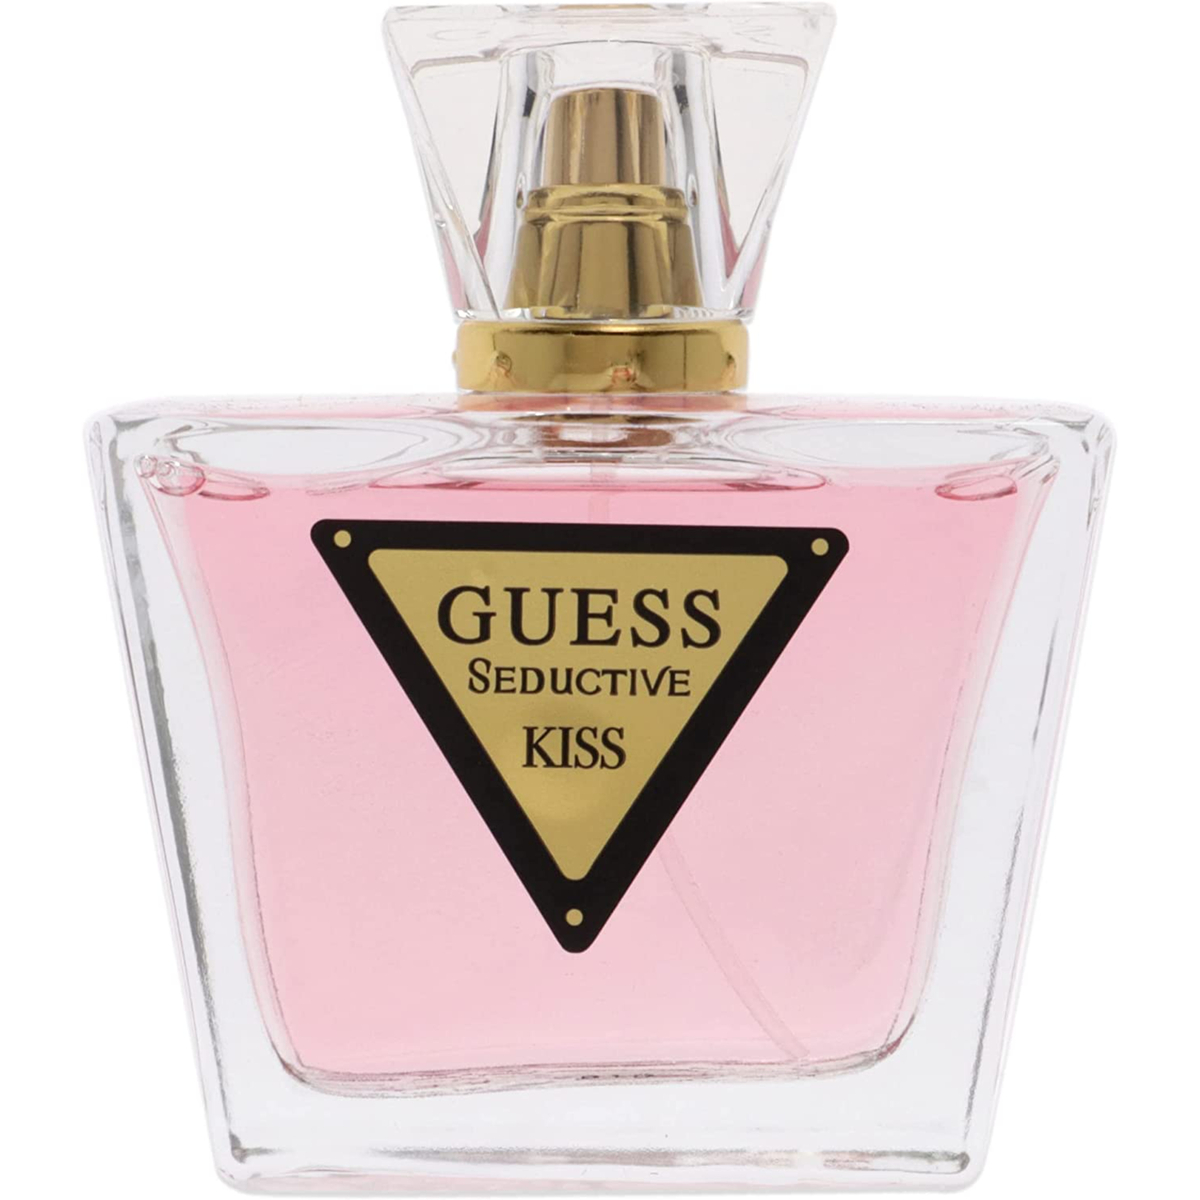 Guess Seductive Kiss Eau de Toilette Spray For Women 75ml